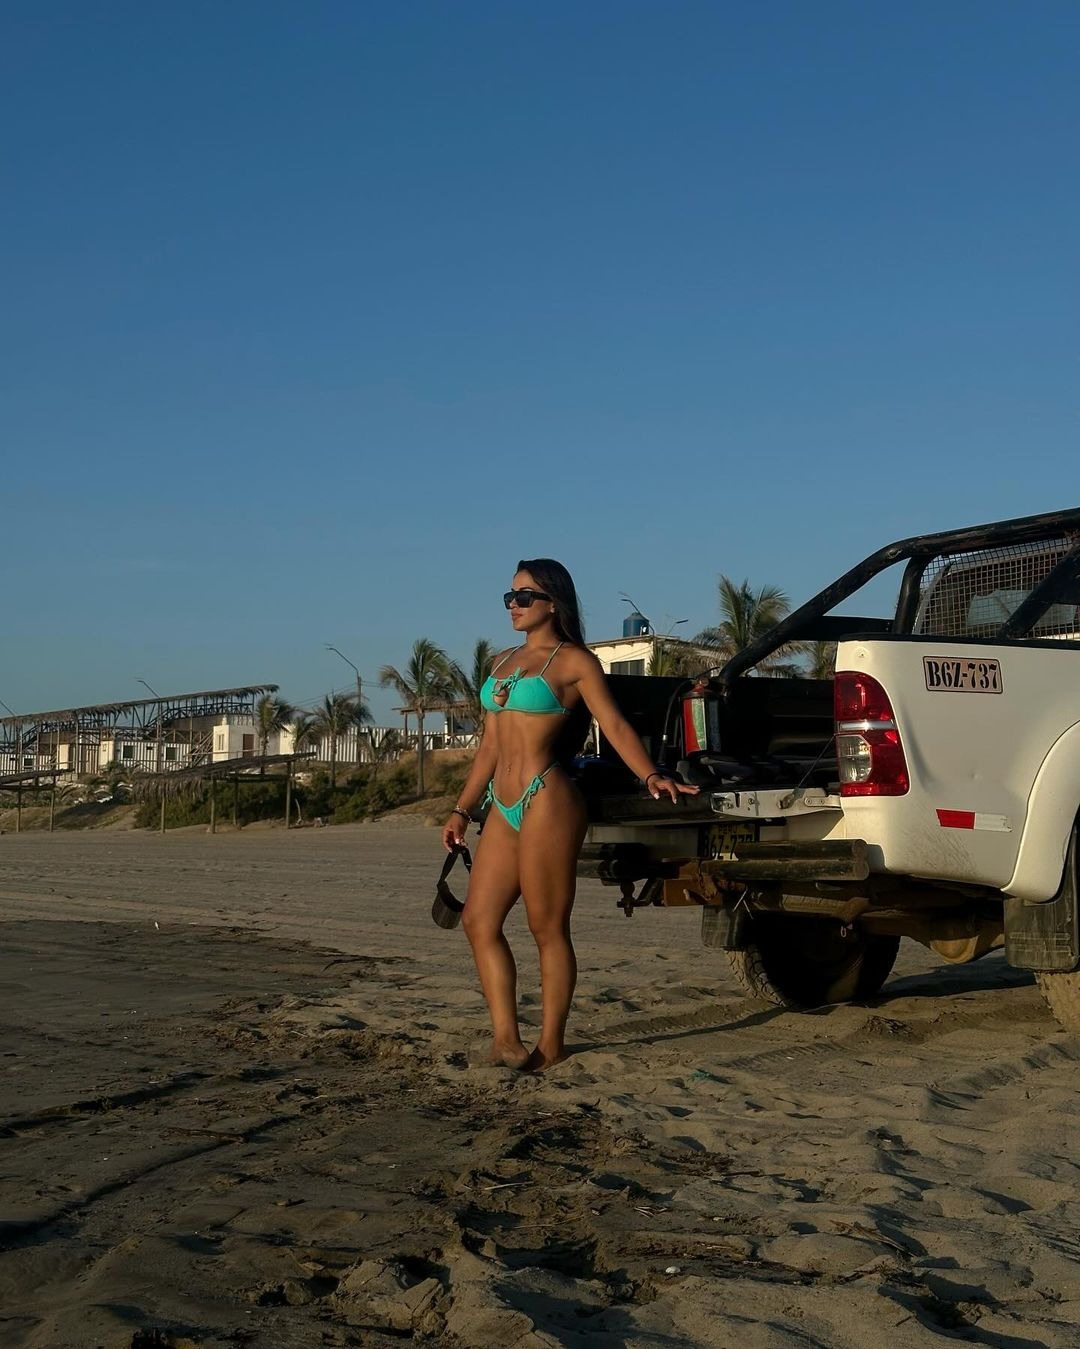 Onelia Molina derrochó sensualidad con candentes fotos en la playa